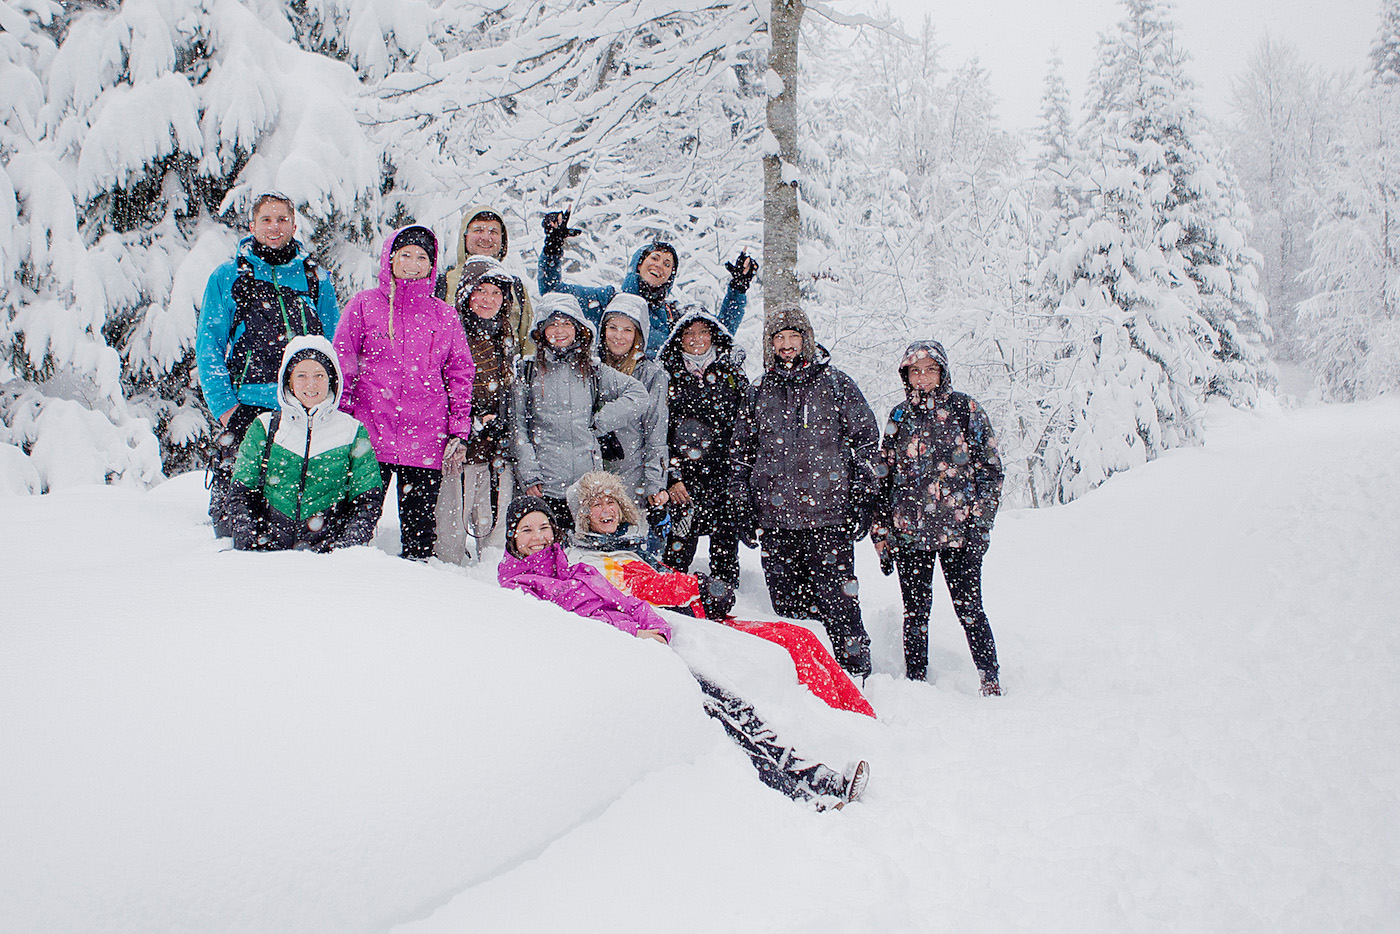 Kulinarik Trail Laax / Flims | Skigebiet LAAX, LAAXisniceyo, Graubünden, skiing in LAAX, culinary trail LAAX/Flims, ski weekend LAAX, winter holiday, winter in Switzerland